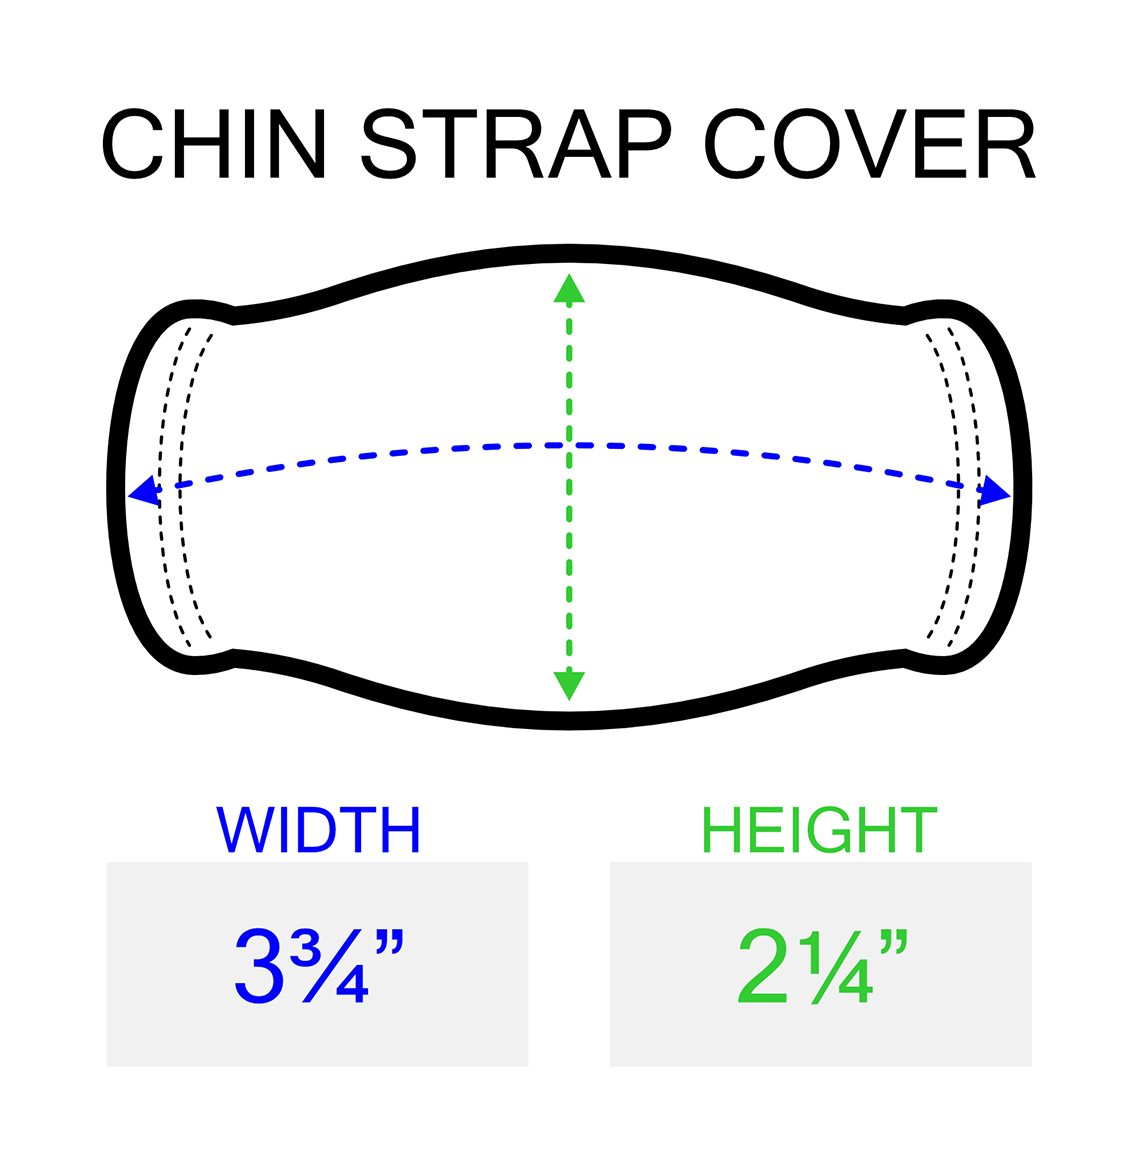 Chin Strap Cover